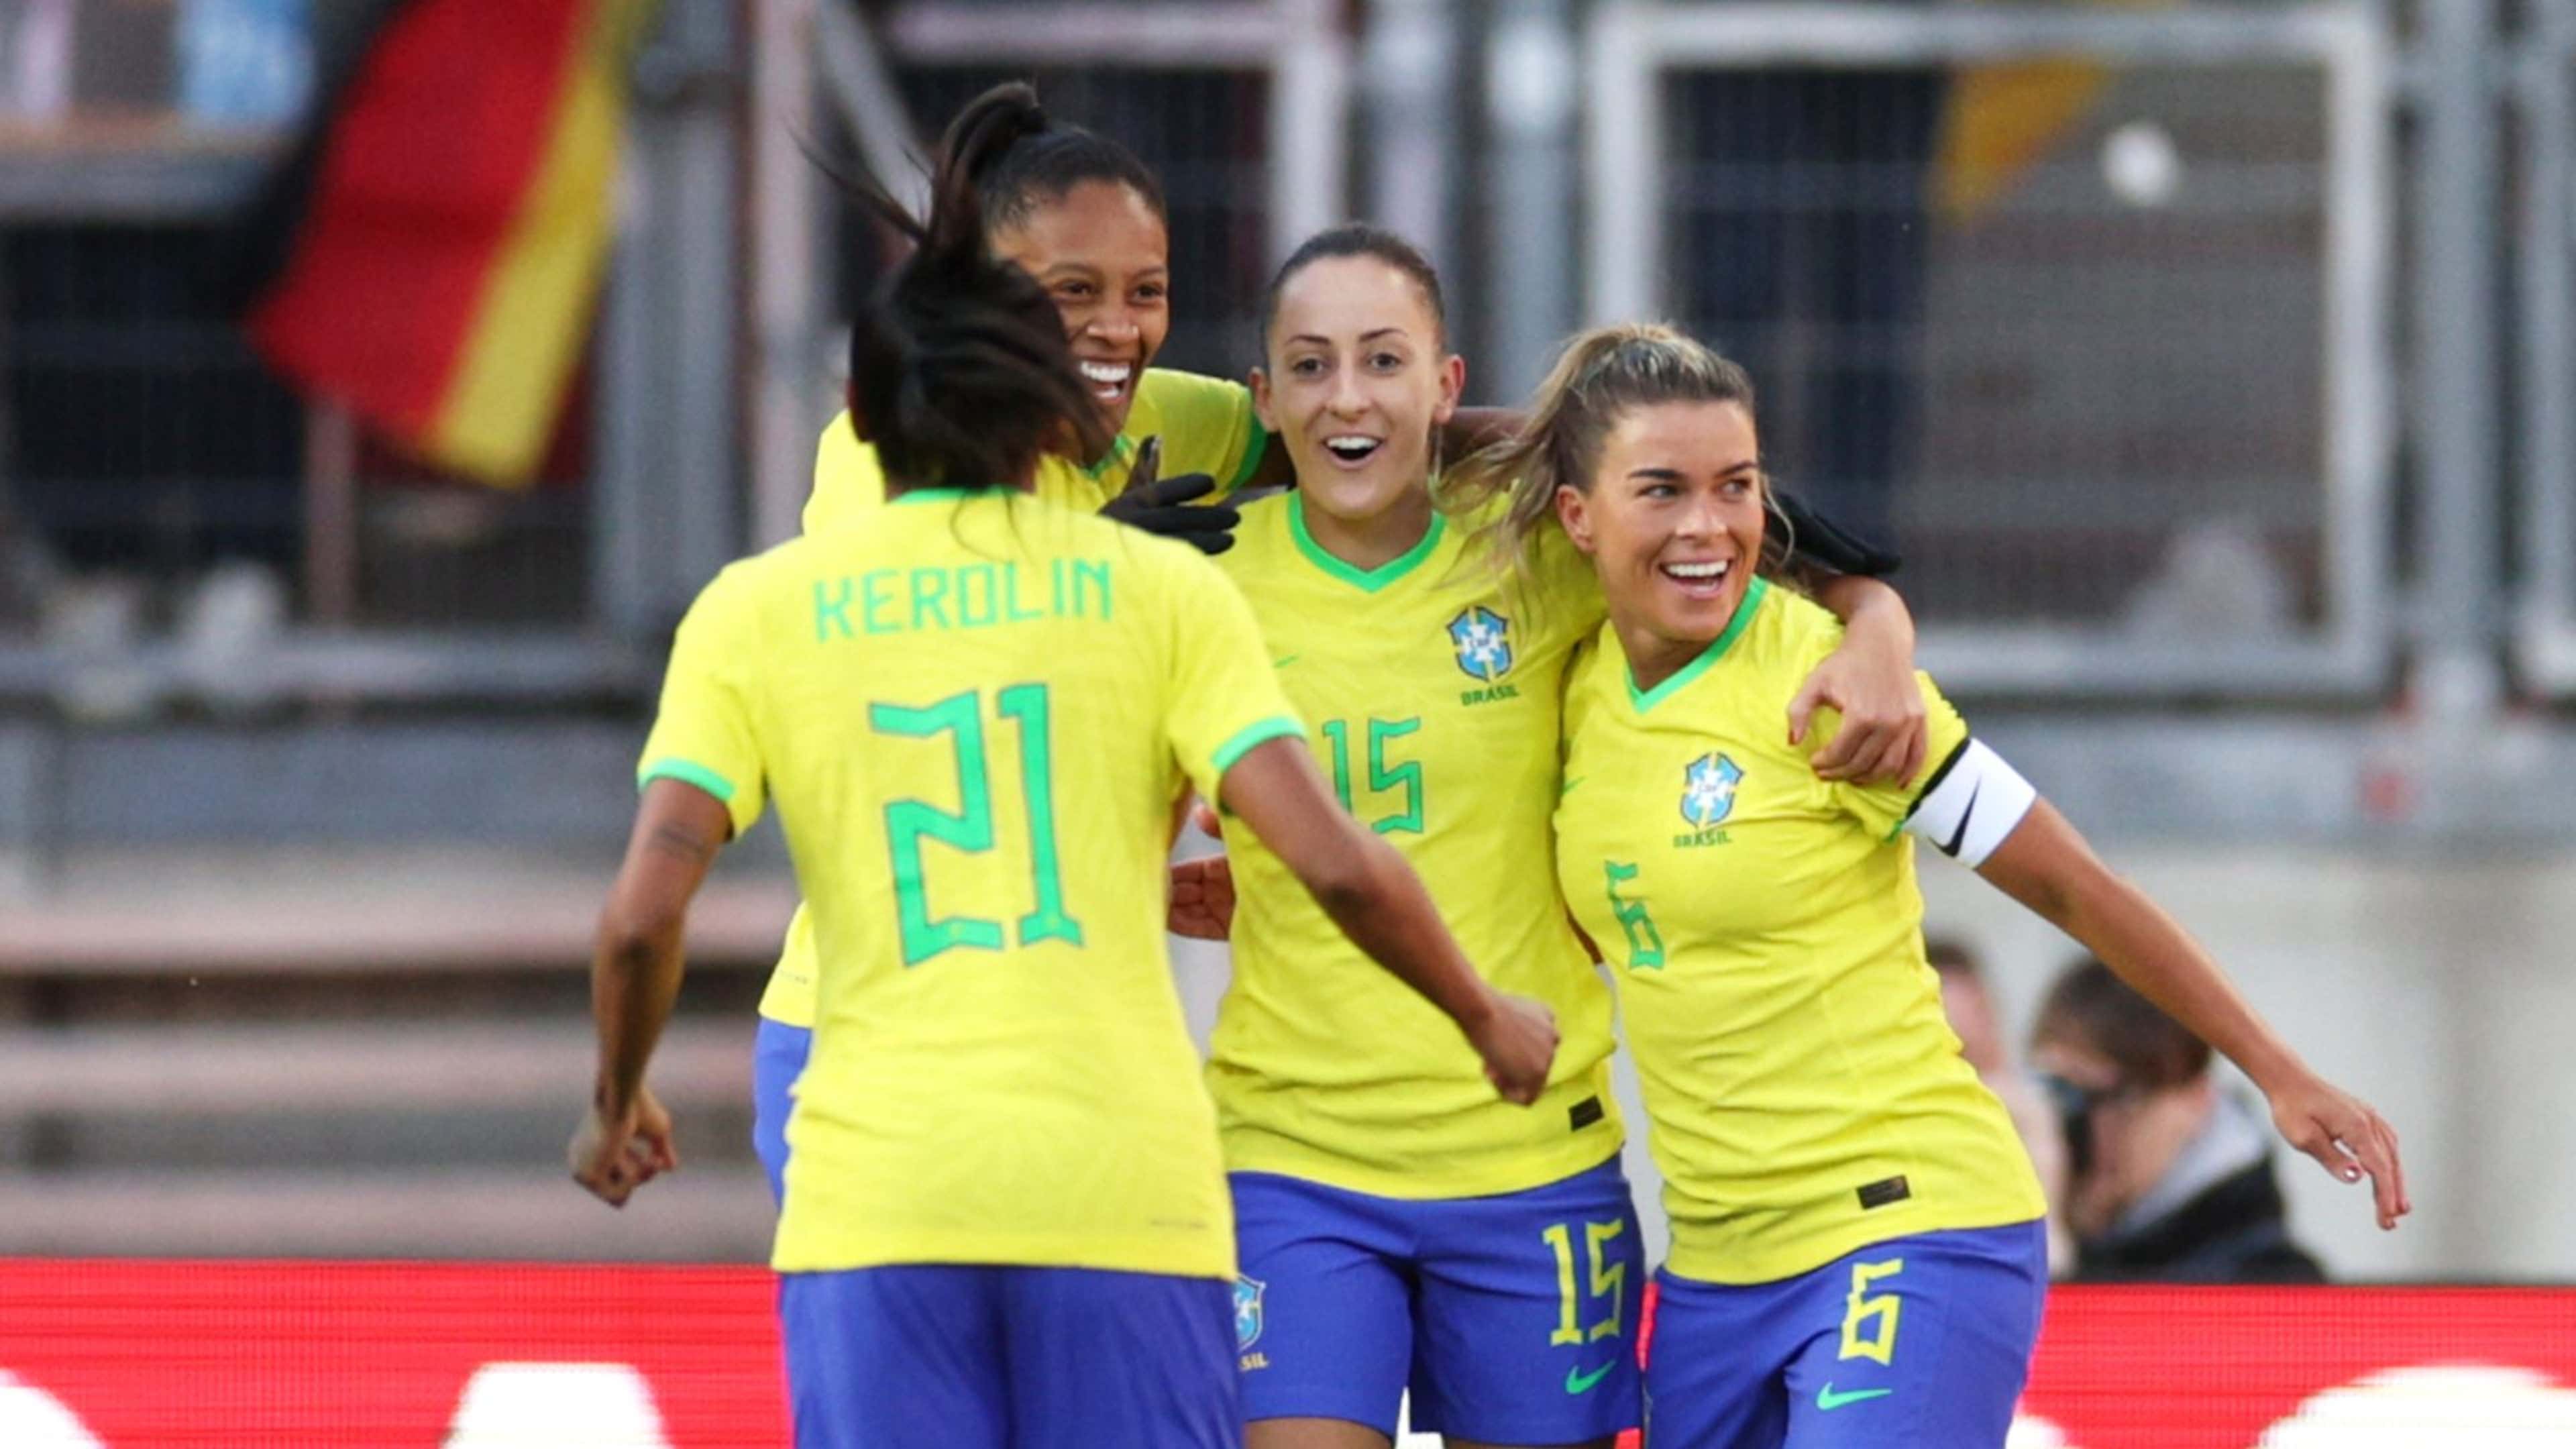 Brasil x Panamá ao vivo e online, onde assistir, que horas é, jogo da copa  do mundo feminina 